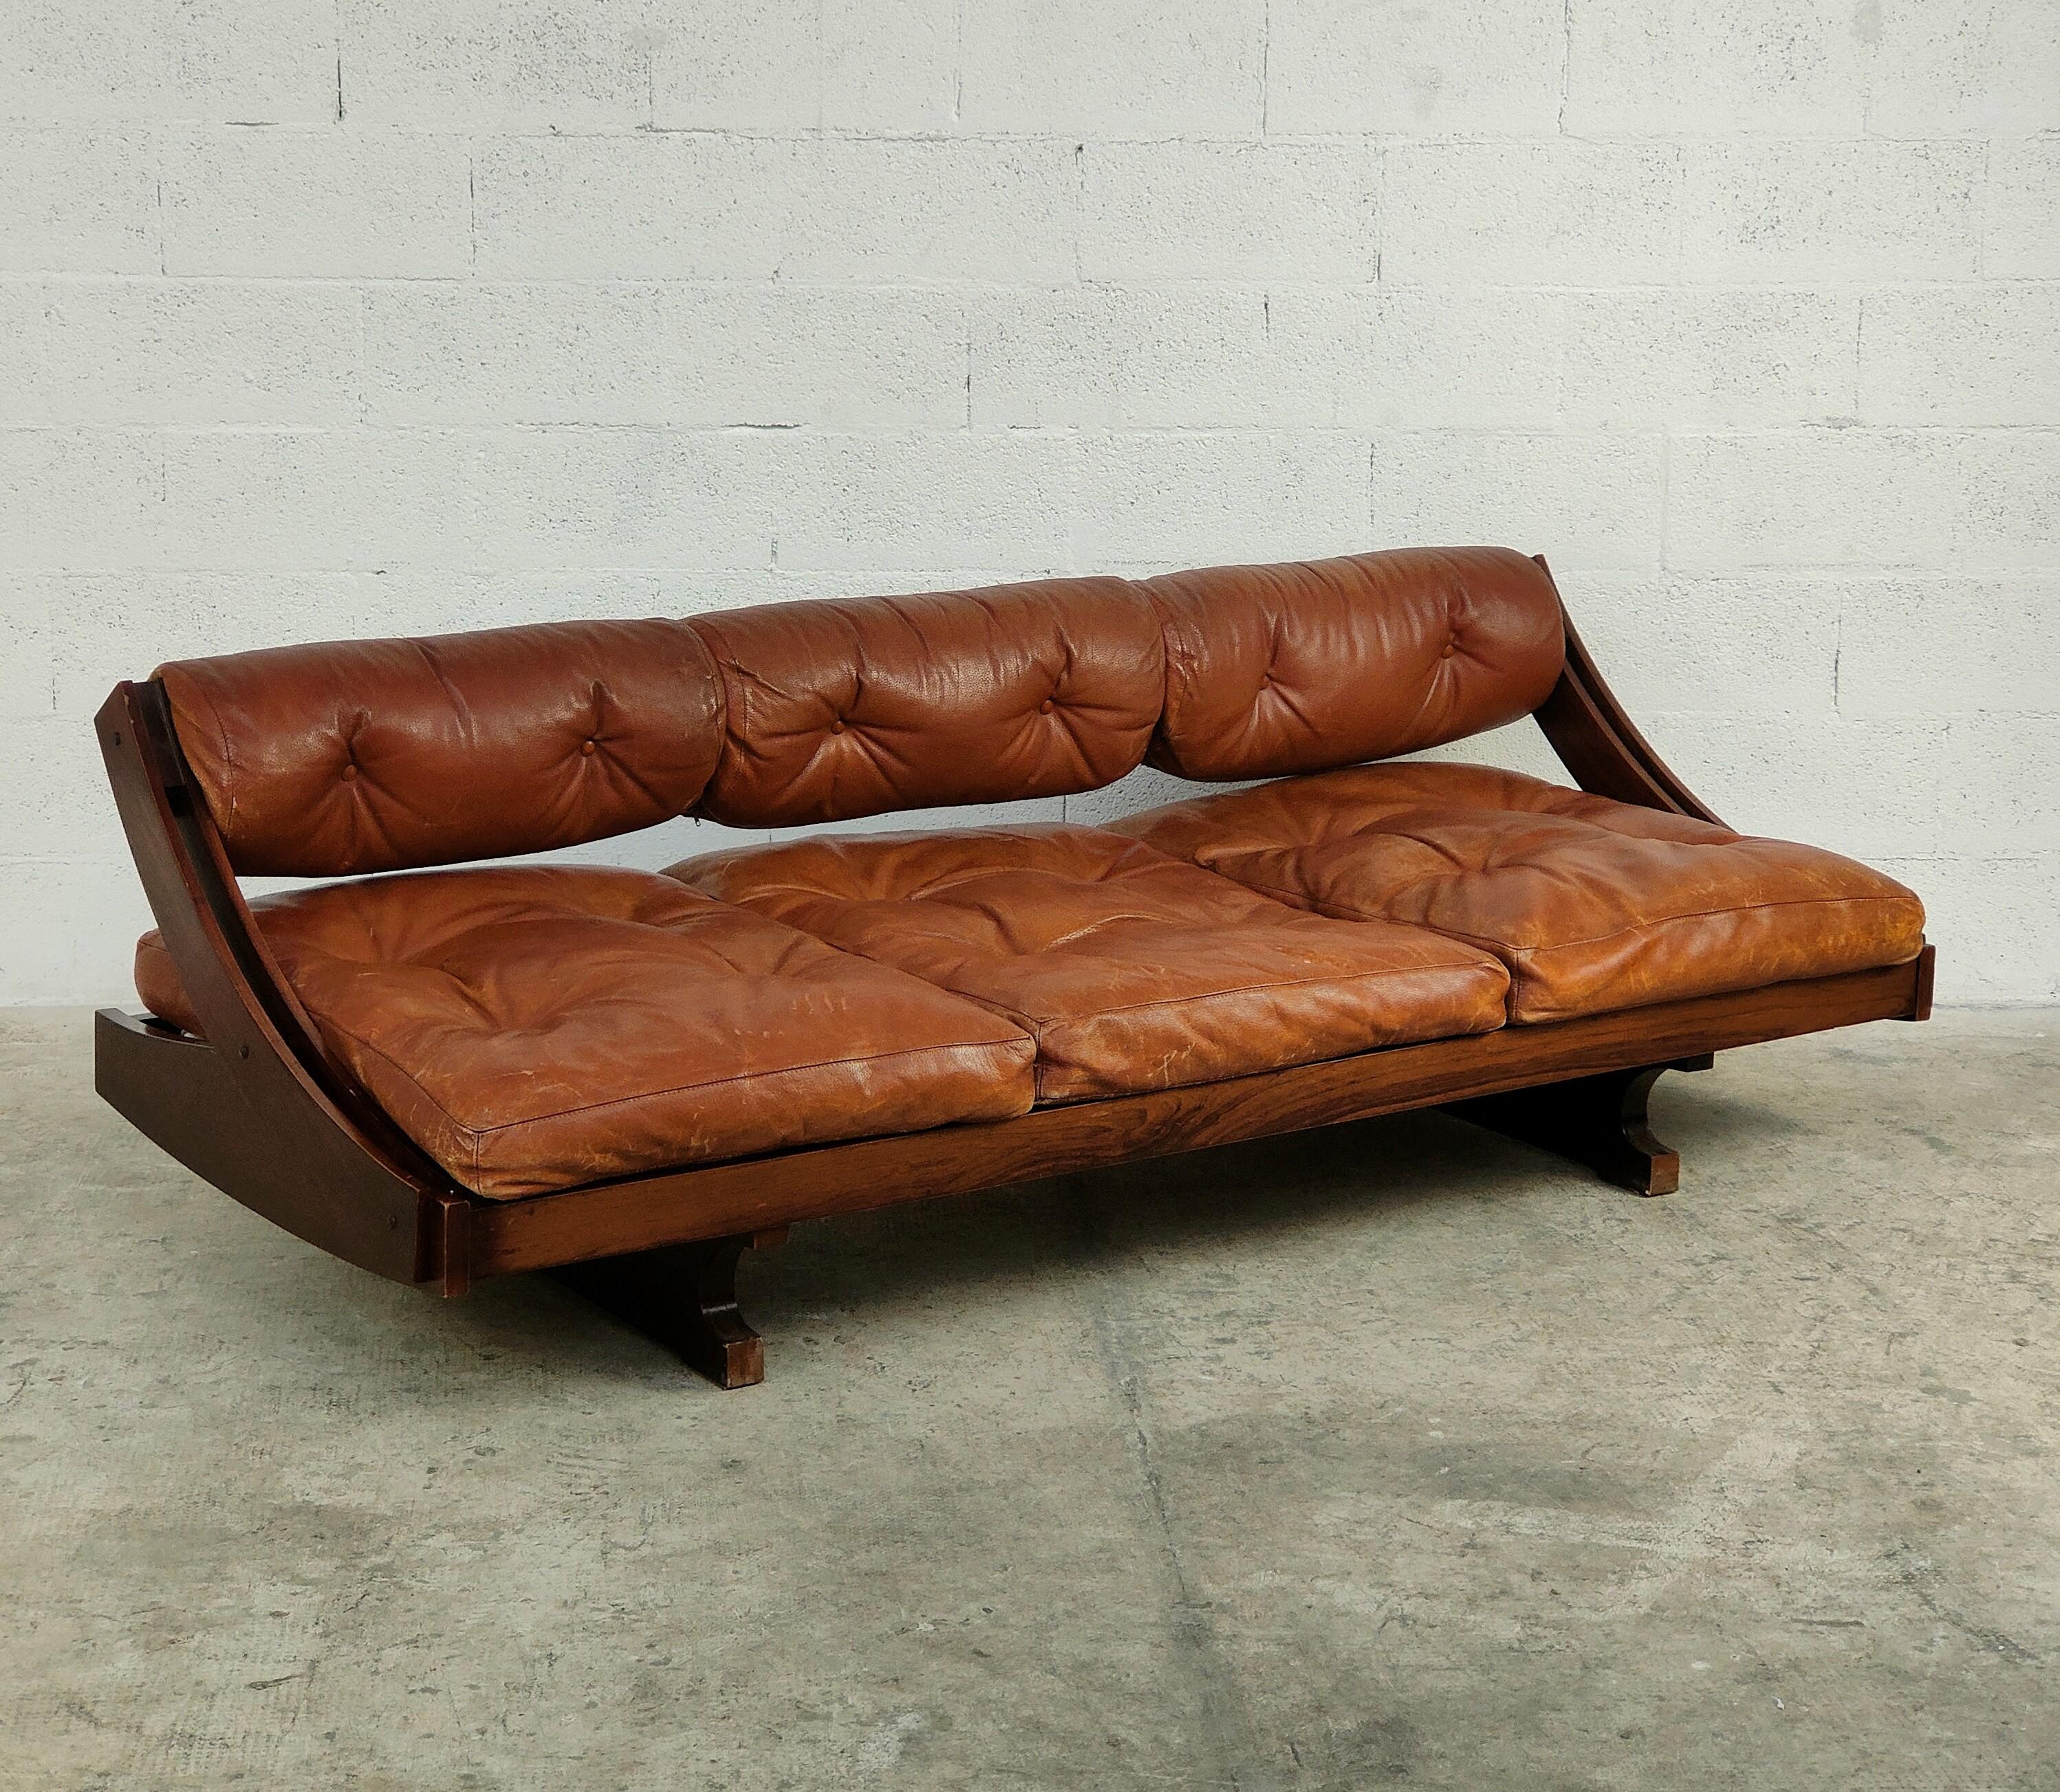 Leder-Tagesbett Sofa GS 195 von Gianni Songia für Sormani 60s (Moderne der Mitte des Jahrhunderts)